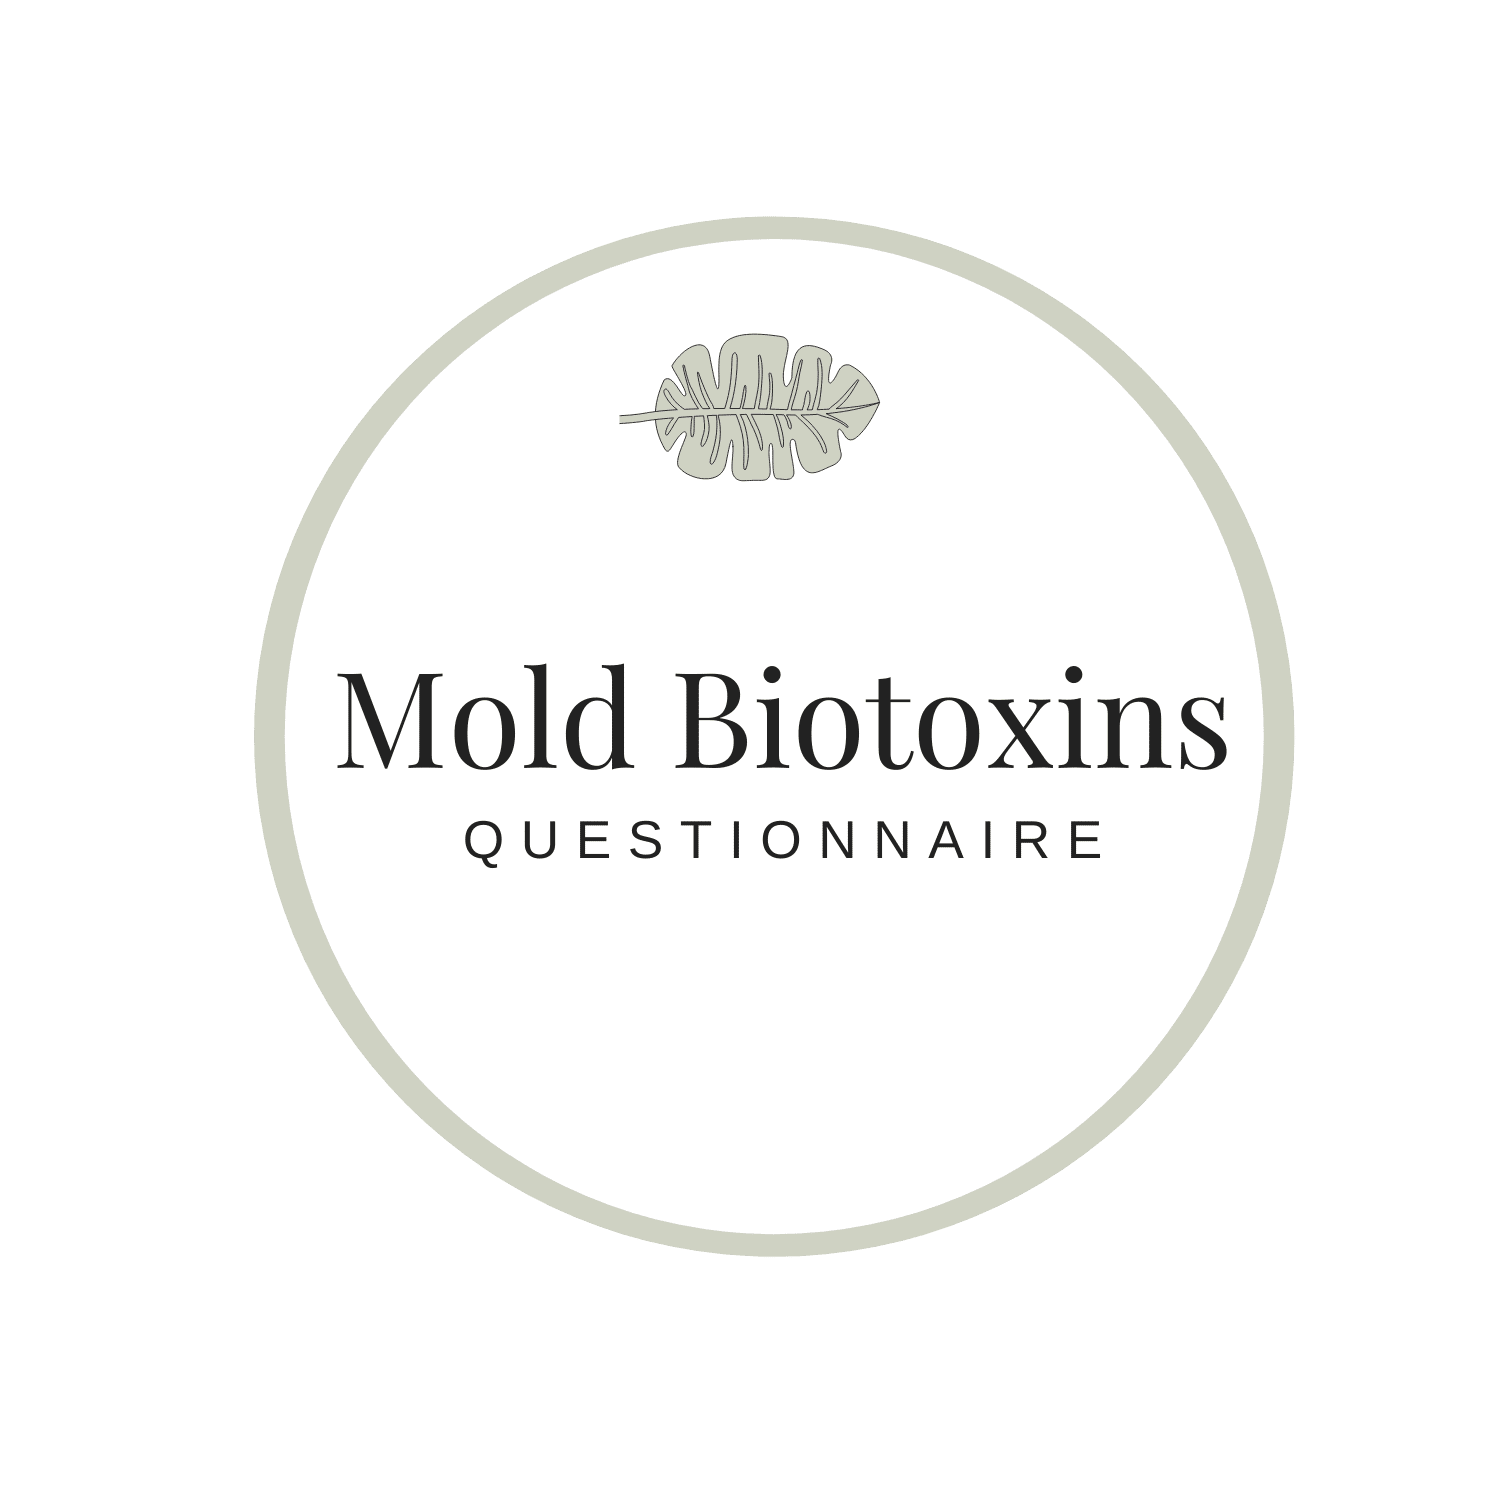 Mold Biotoxins Questionnaire